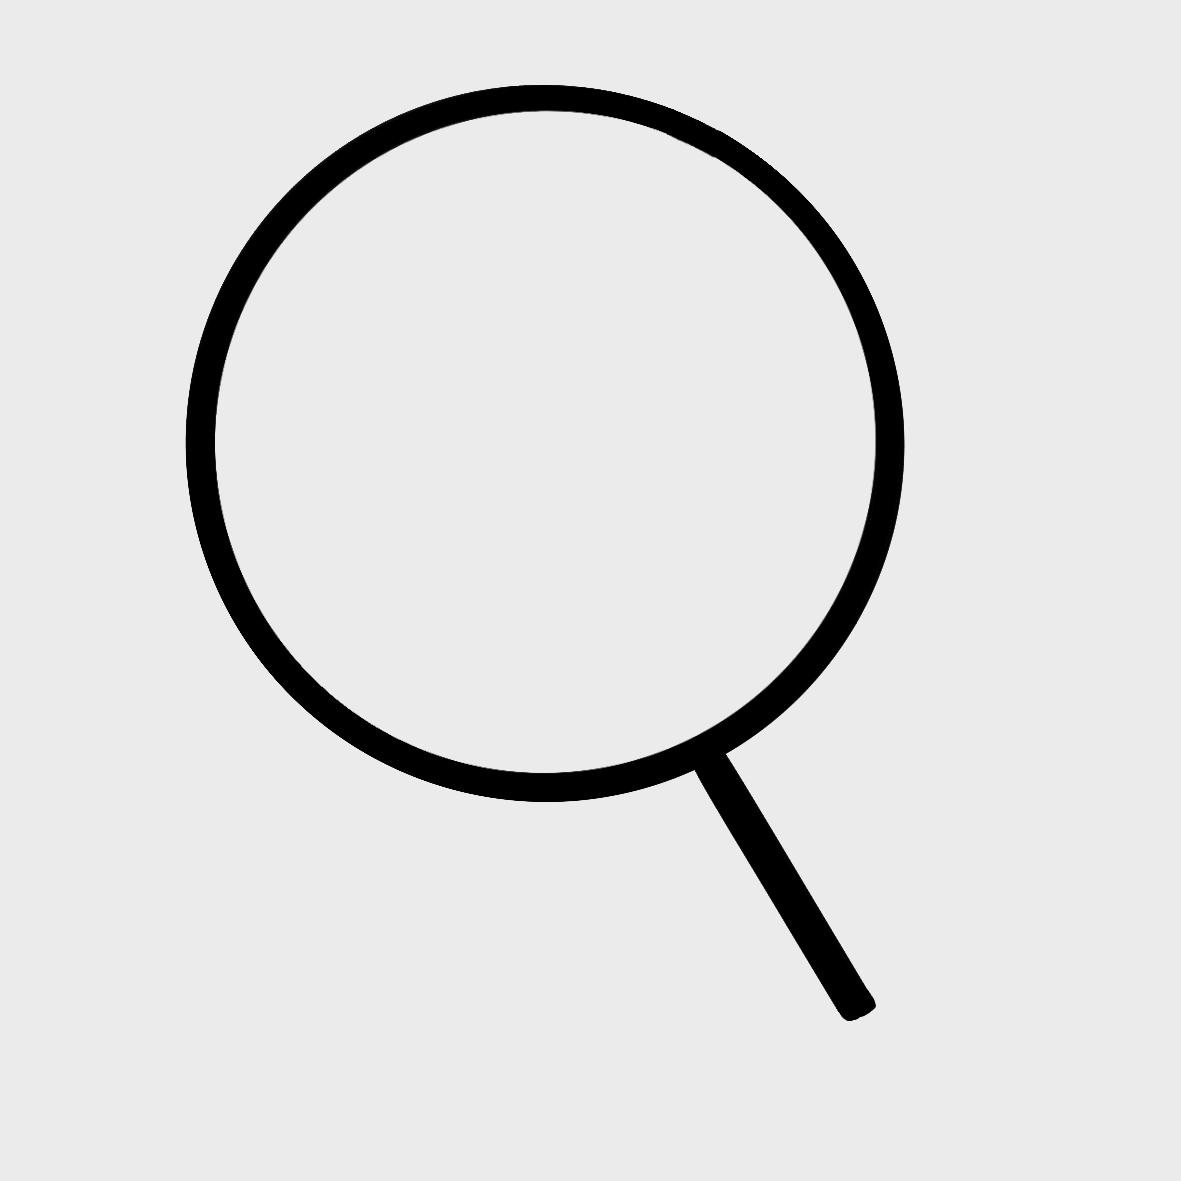 Ein vereinfachtes Lupen-Symbol: Ein kreis mit einer kurzen schwarzen Linie an der Seite auf grauem Hintergrund.